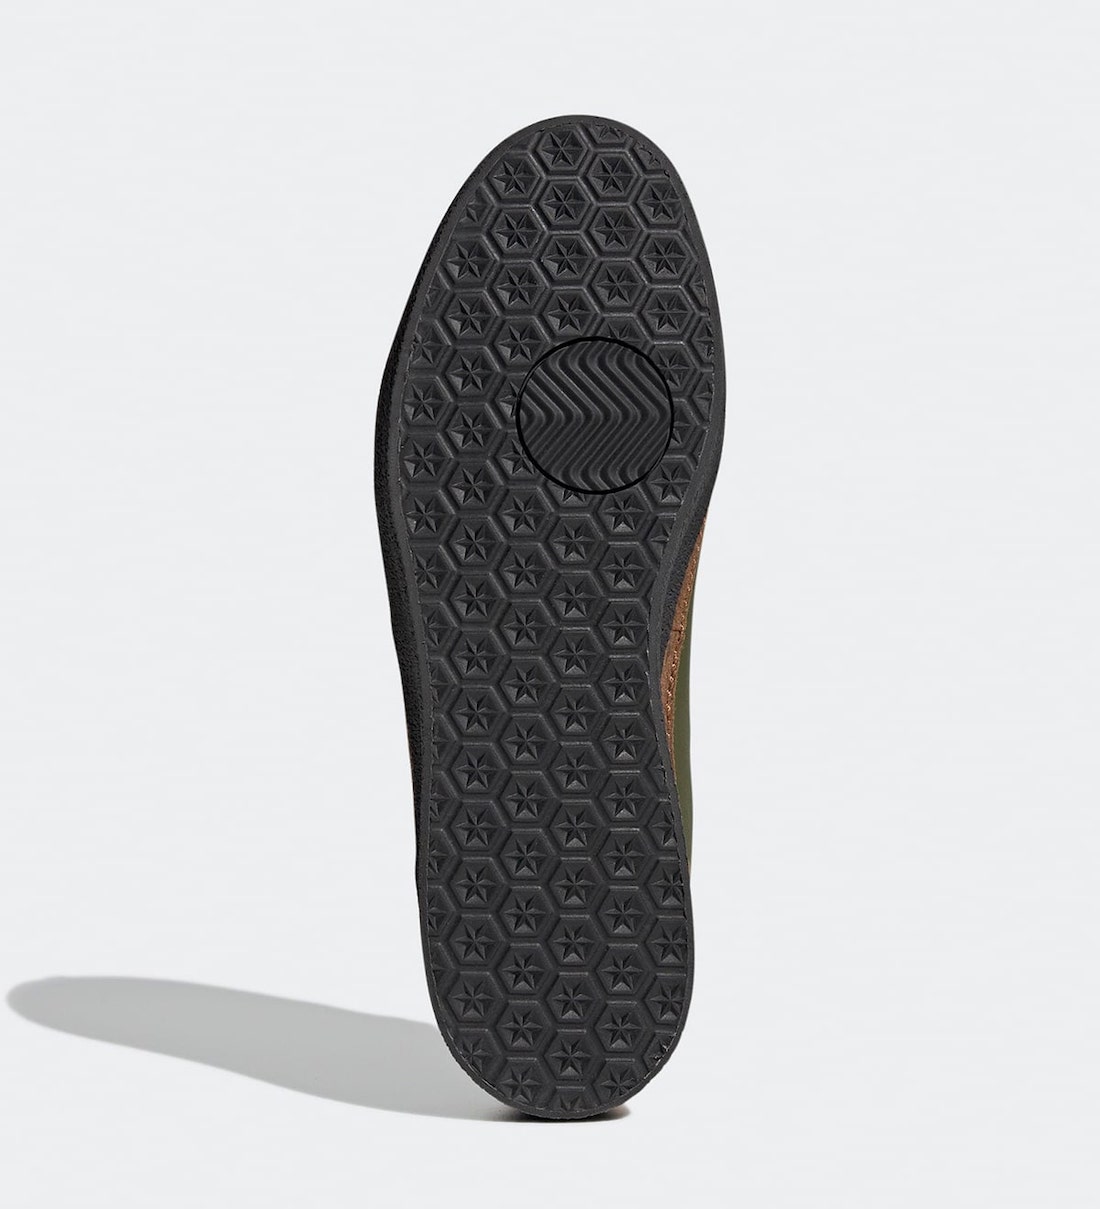 辛普森一家 adidas McCarten Ned Flanders GY8439 发布日期